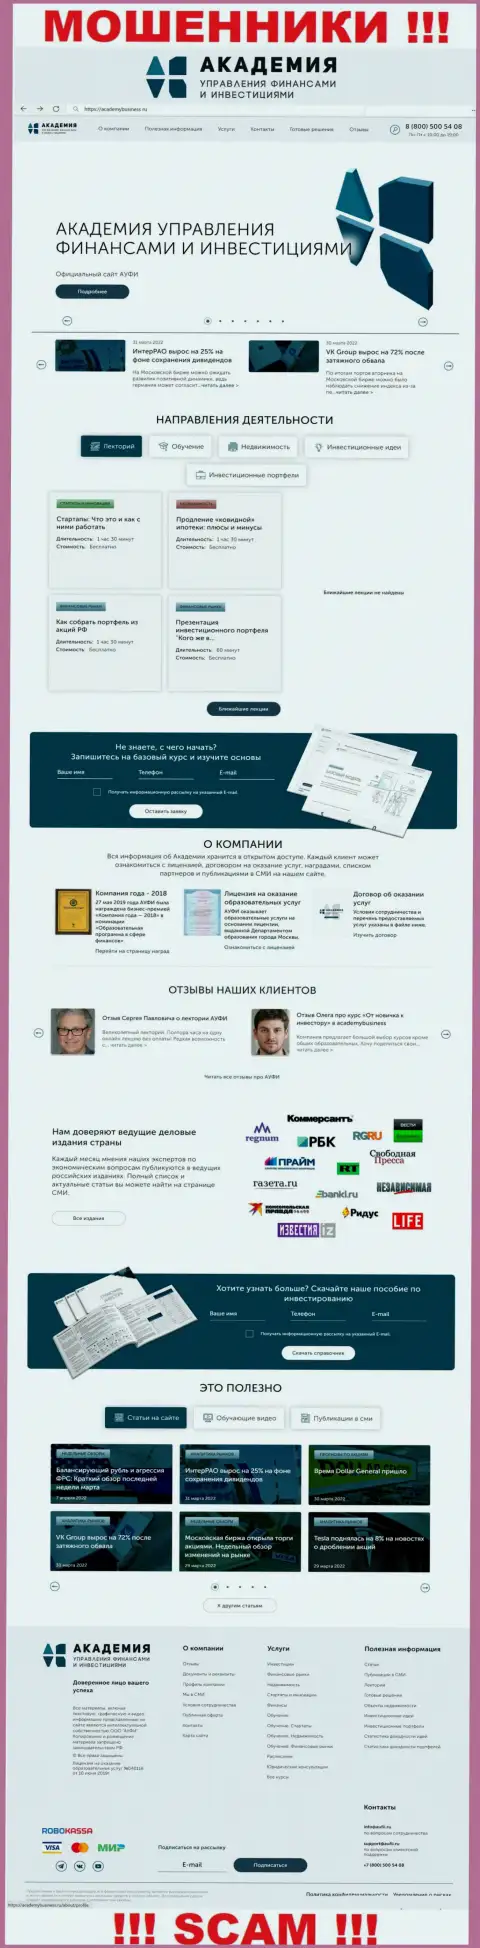 Сайт мошеннической конторы Академия управления финансами и инвестициями - AcademyBusiness Ru